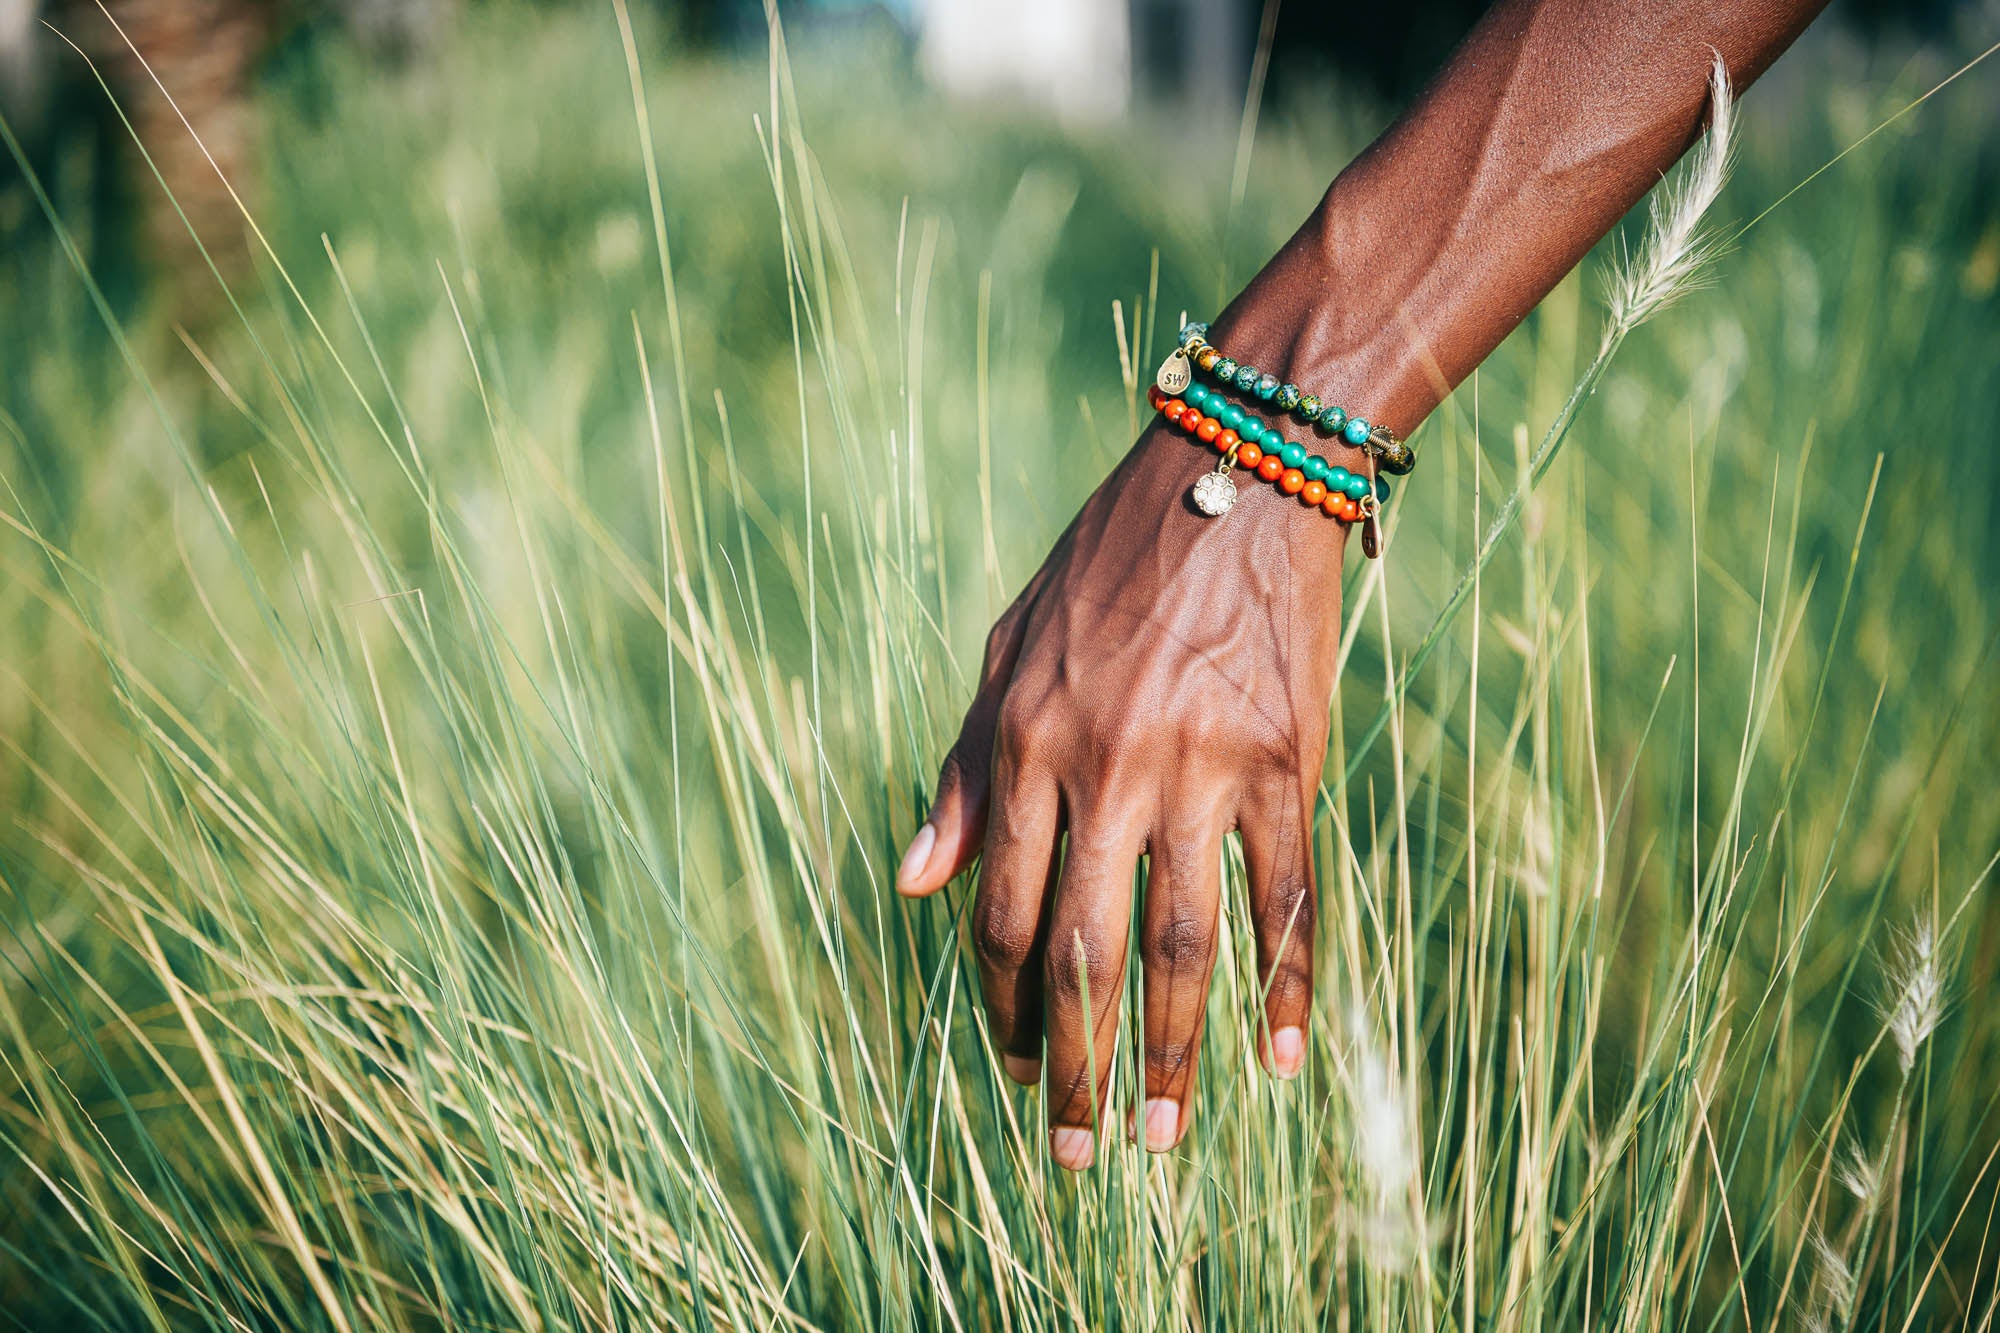 Zoulou africain bracelet perlé, bracelets femmes, bracelets tribal 